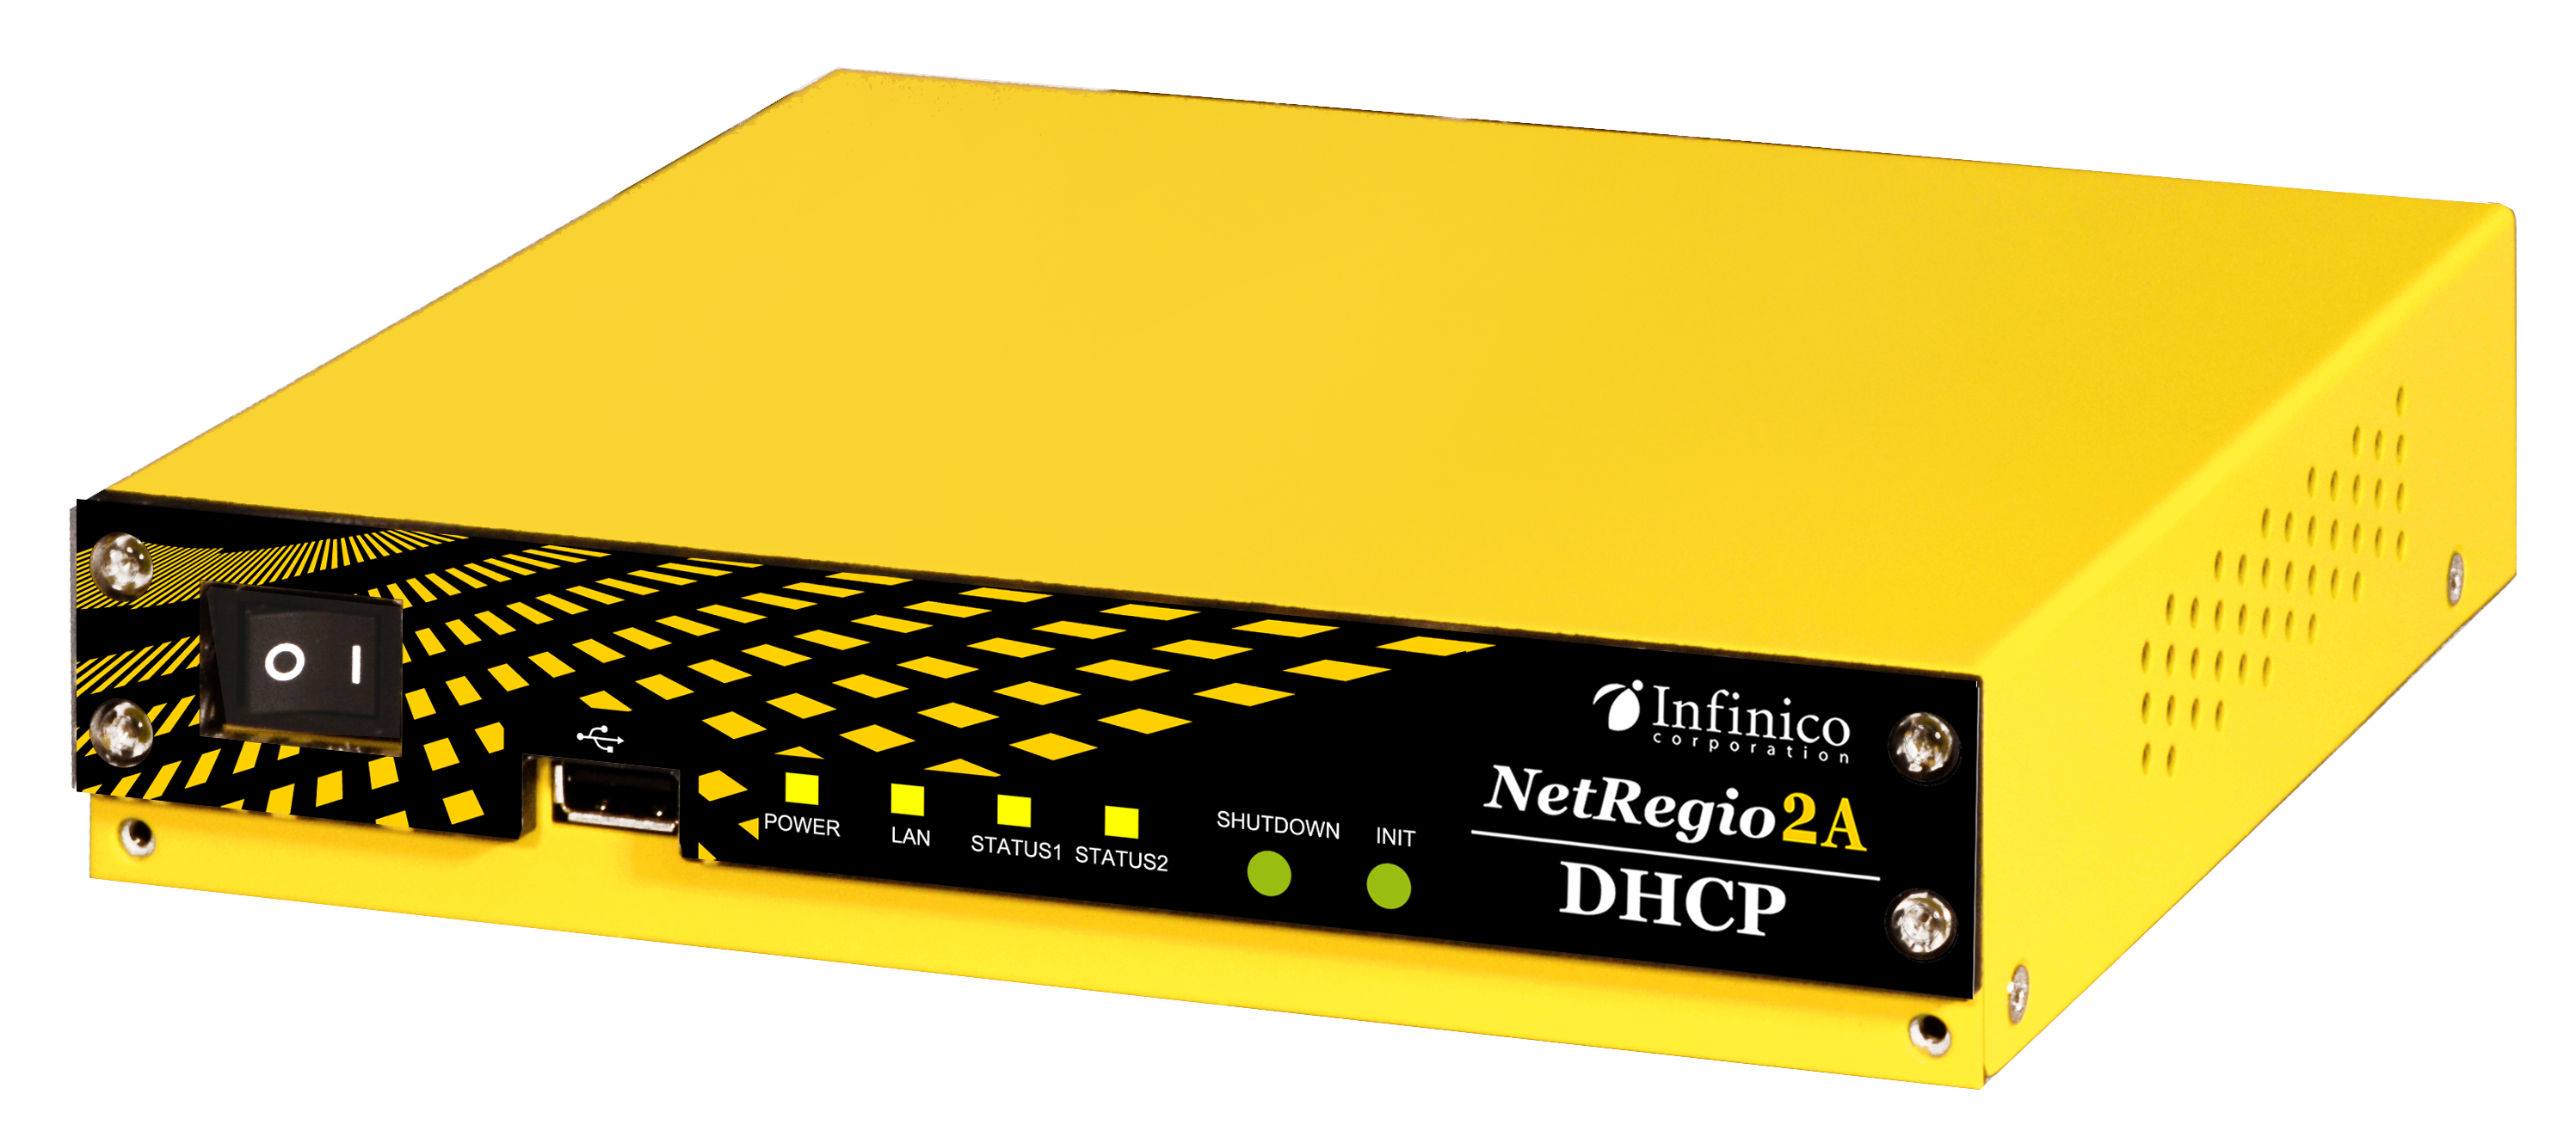 NetRegio DHCP